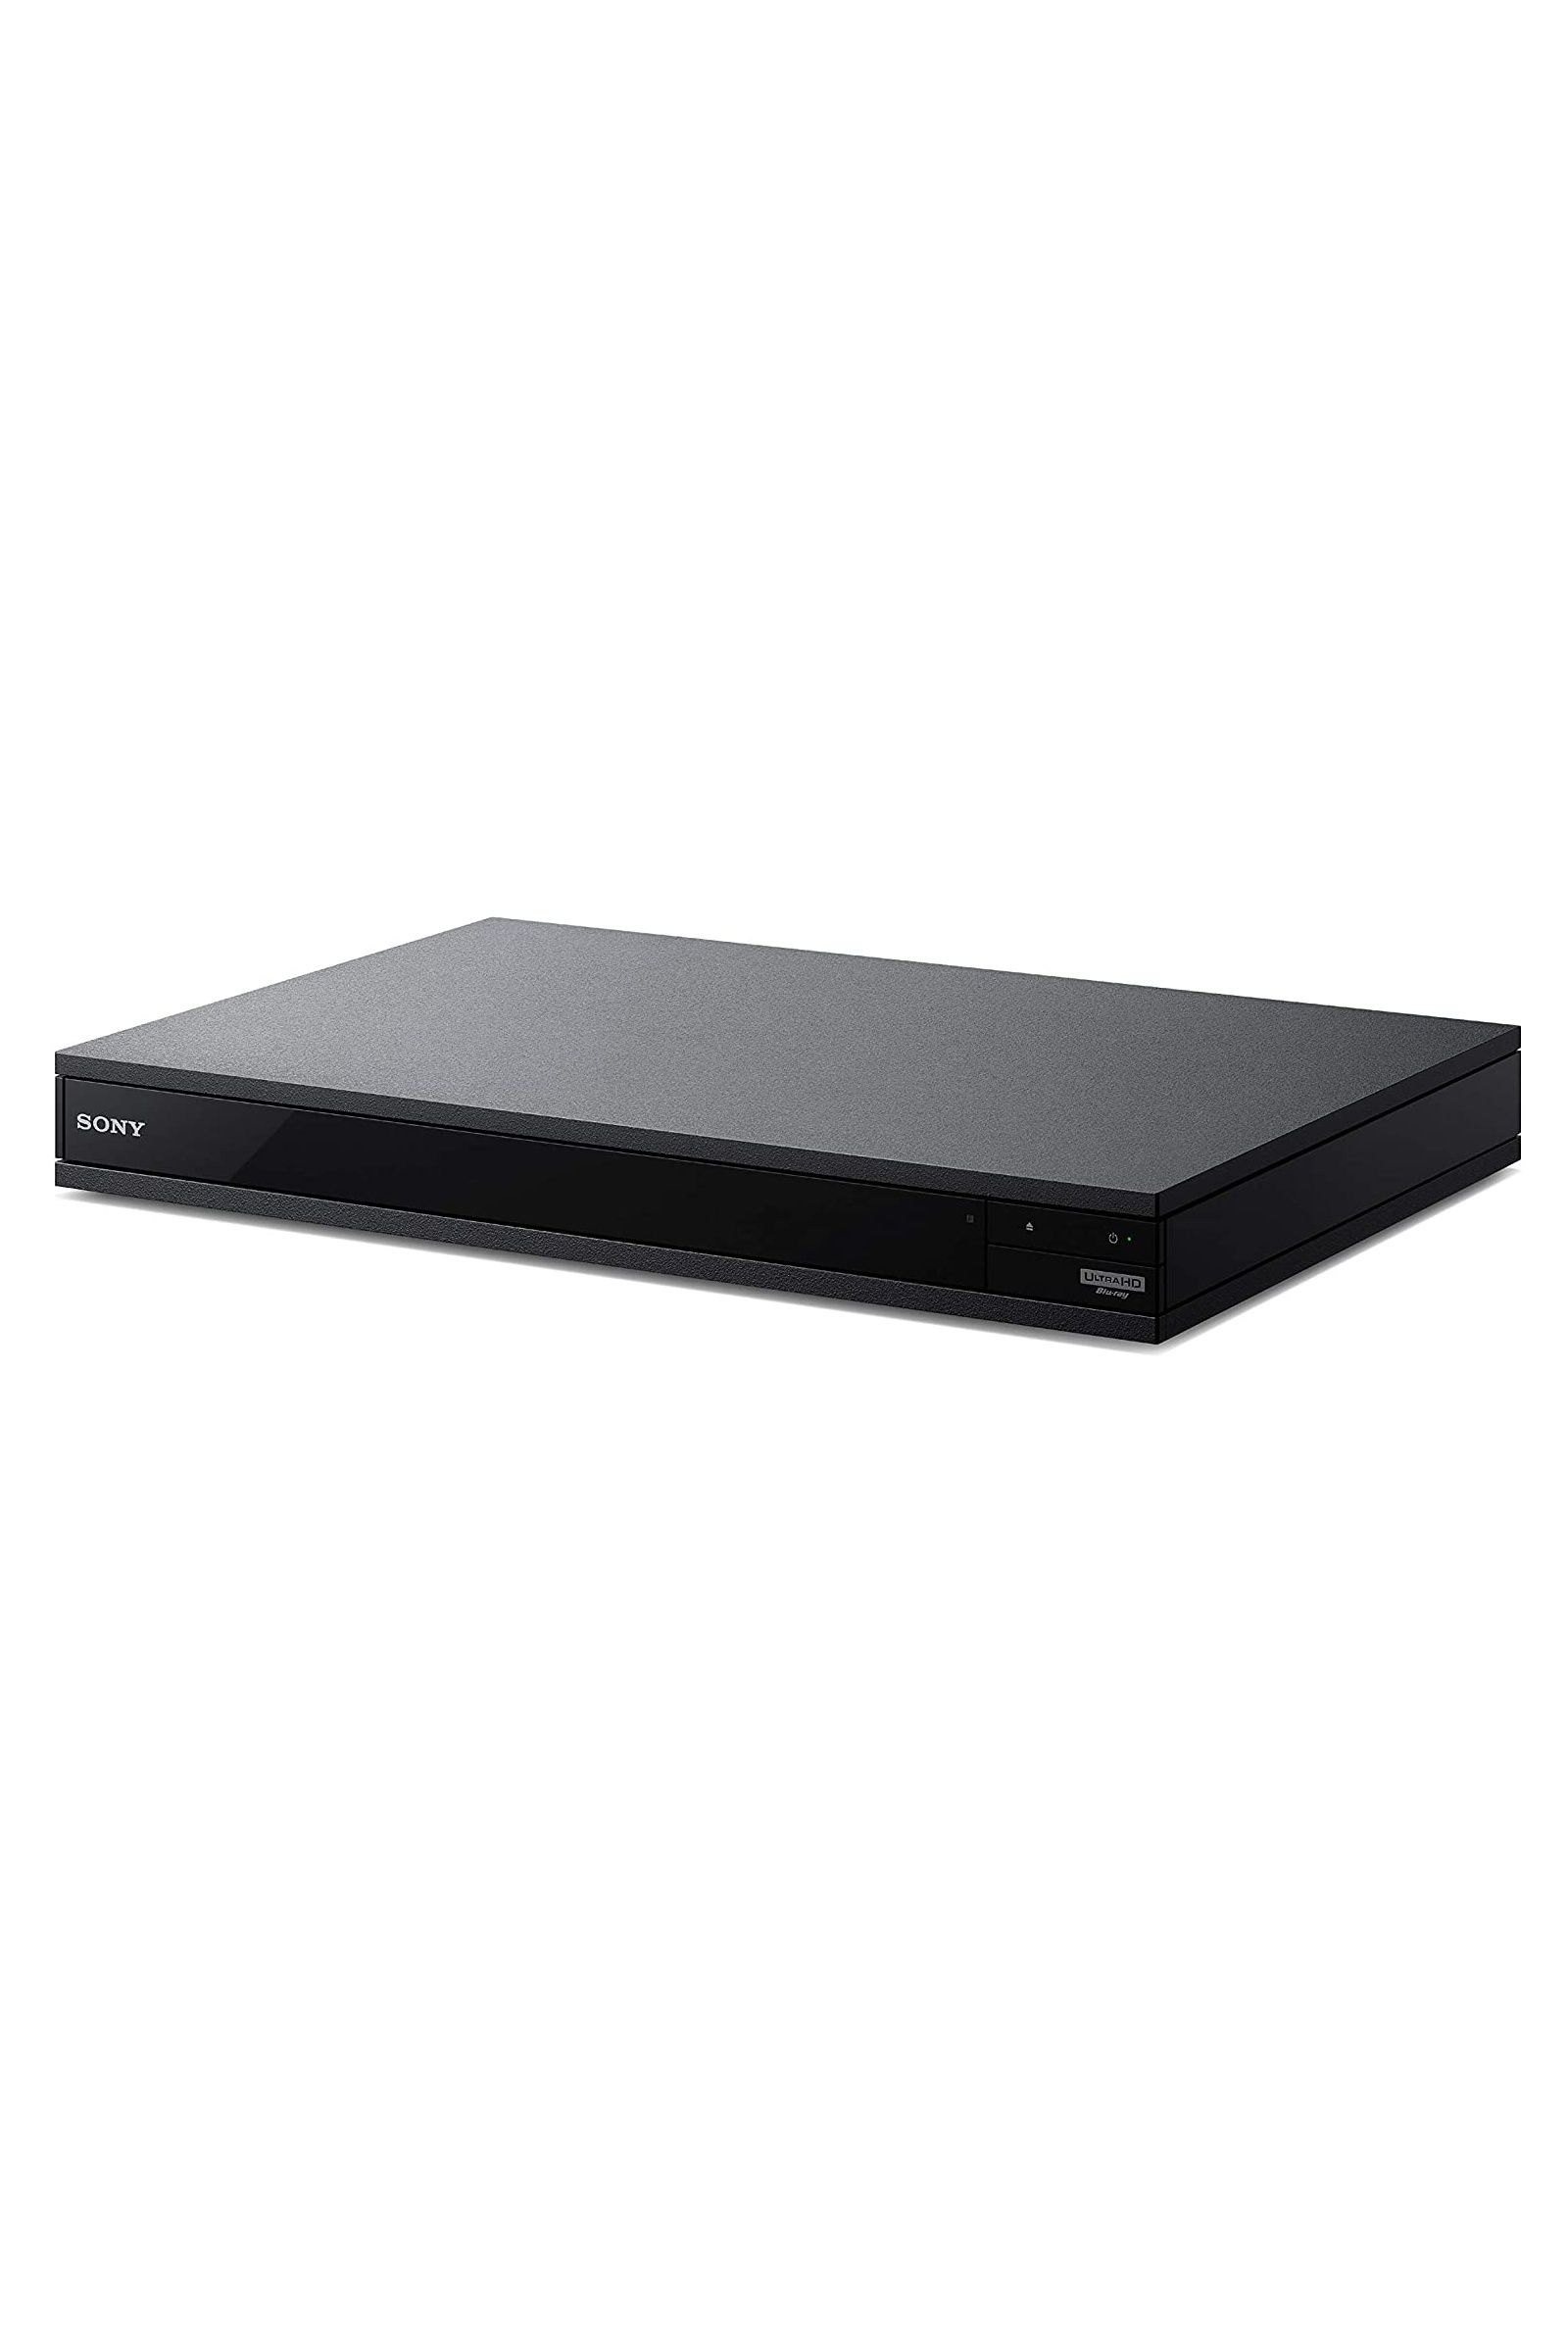 Sony UBP-X800M2 Blu-ray Player